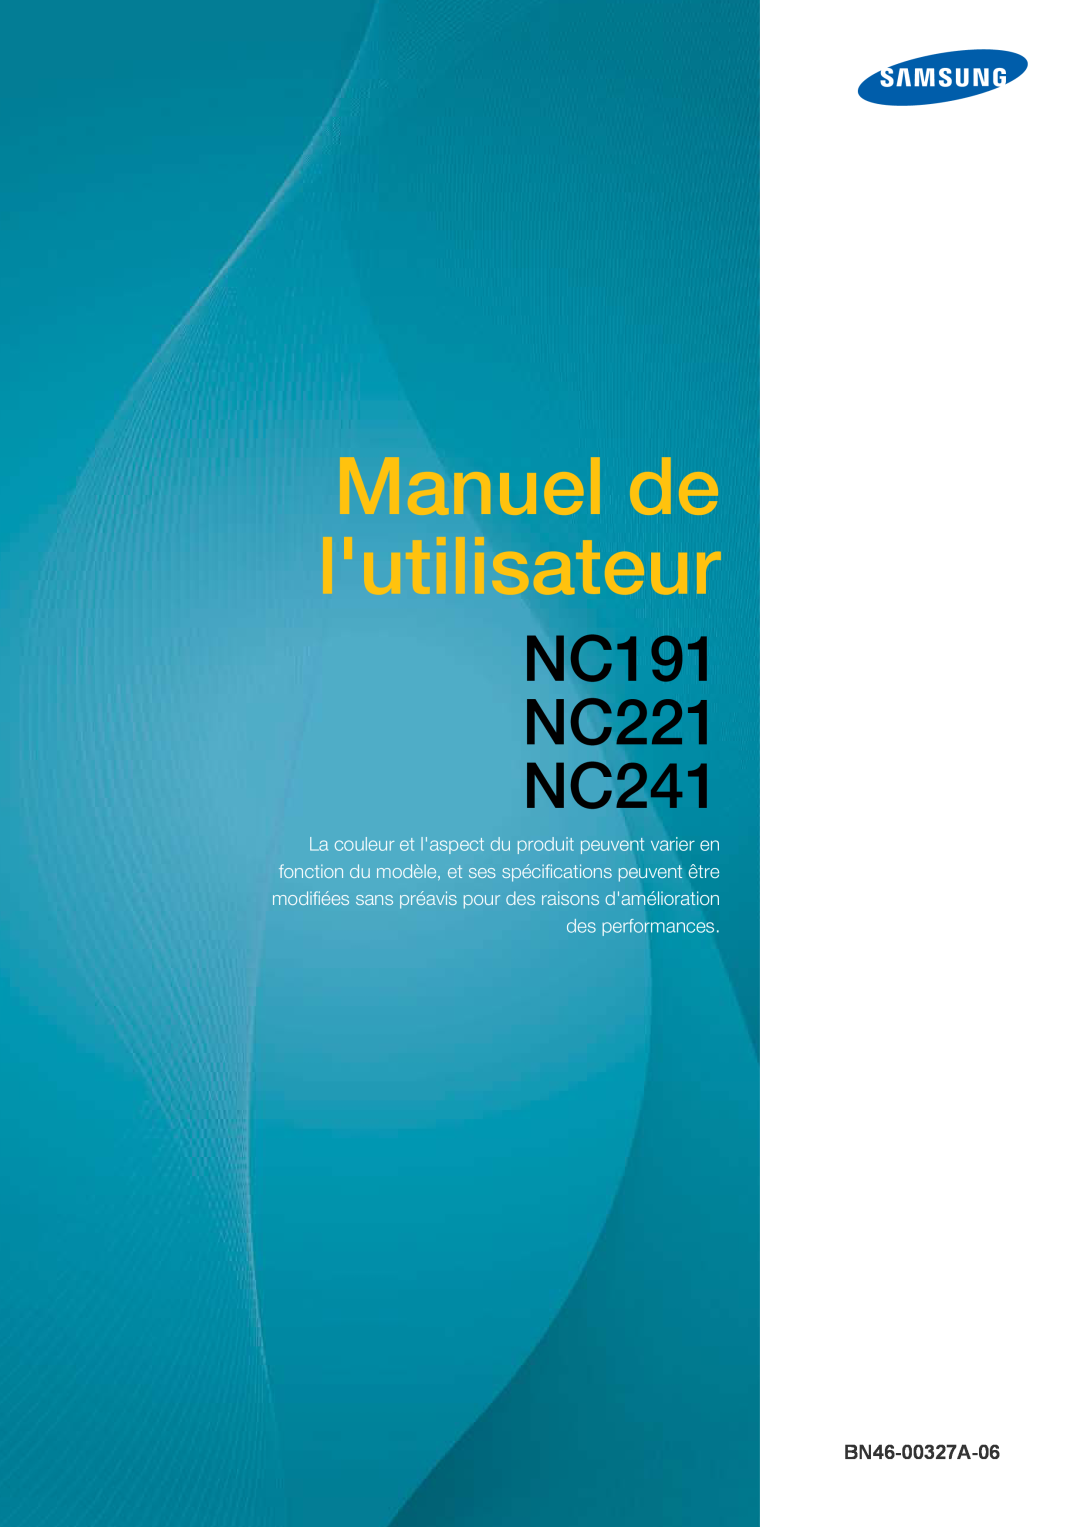 Samsung LF22FN1PFBZXEN manual Használati útmutató, NC191 NC221 NC241, BN46-00327A-06 